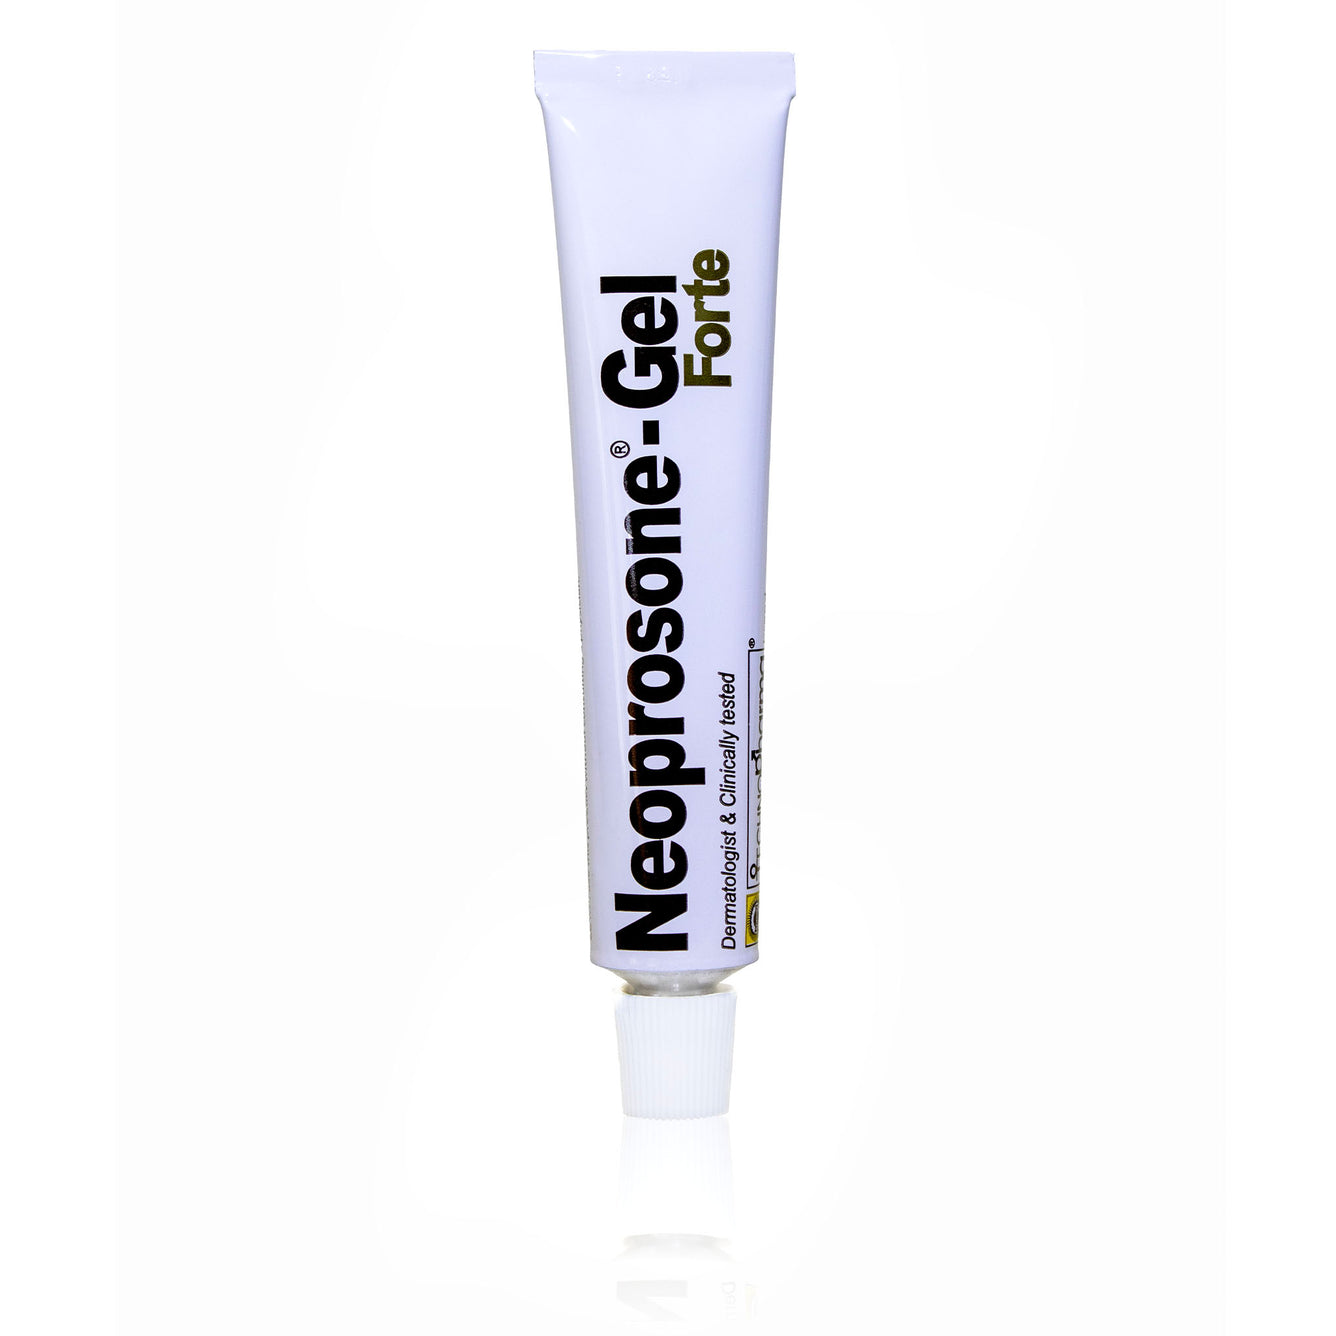 Neoprosone Brightening Gel - Moisturizer Cream Gel - 30g / 1 oz Neoprosone Technopharma - Mitchell Brands - Skin Lightening, Skin Brightening, Fade Dark Spots, Shea Butter, Hair Growth Products